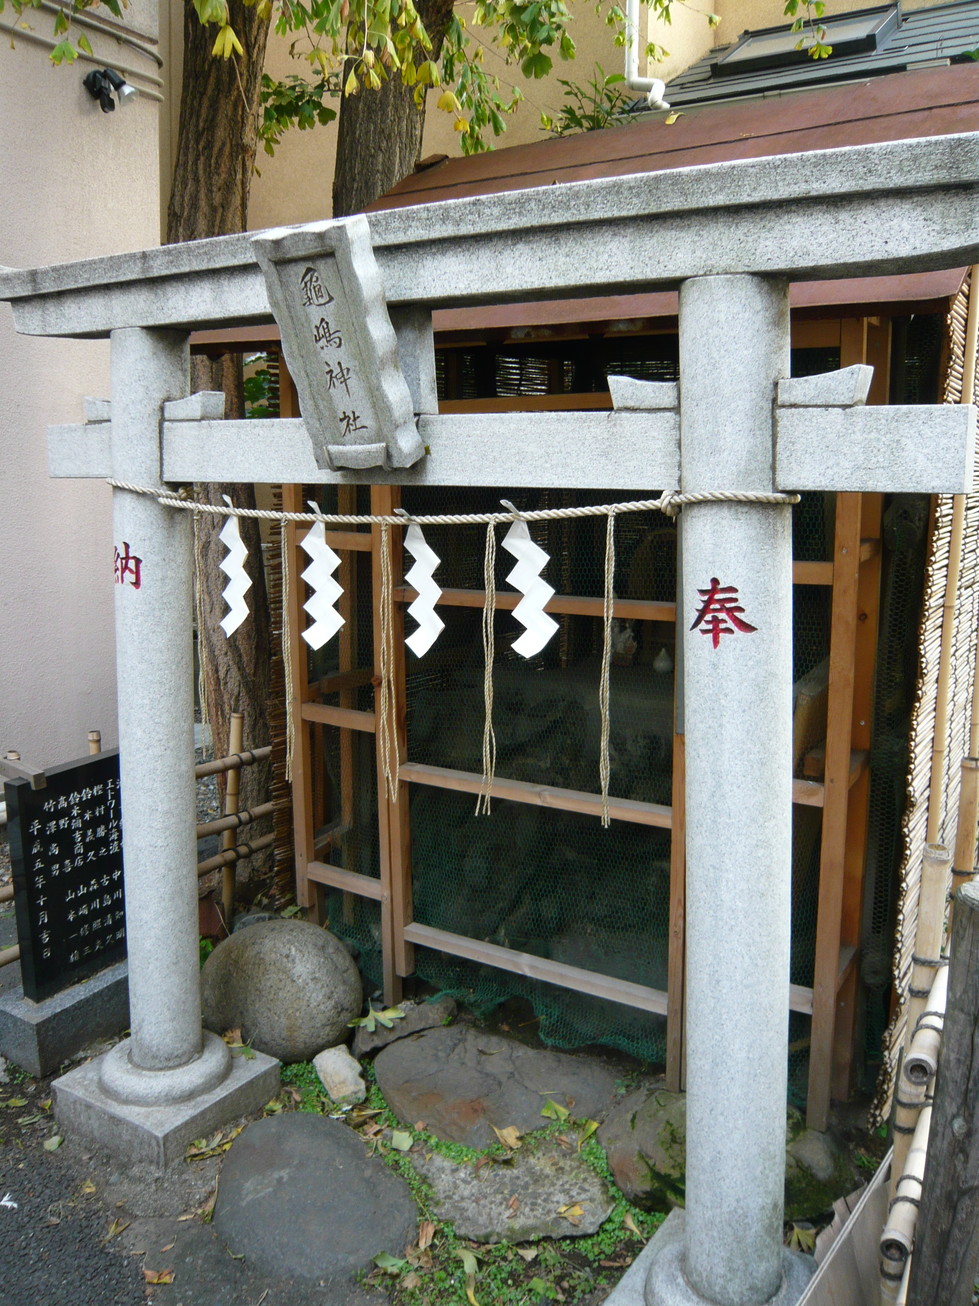  亀嶋稲荷神社 